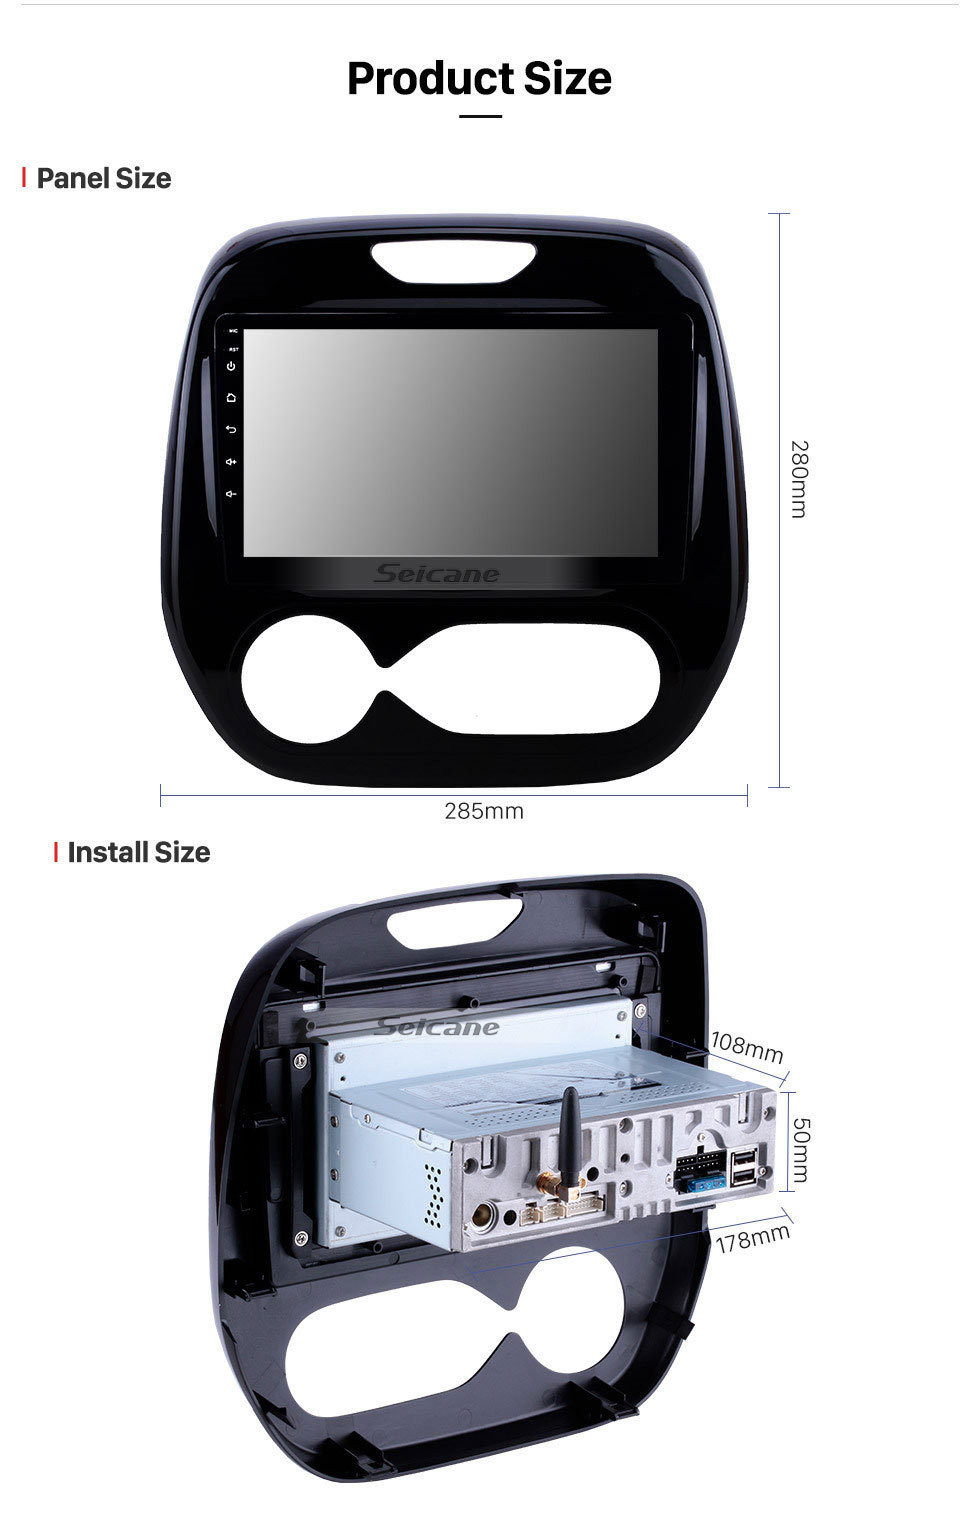 Seicane 9 zoll 2011-2016 Renault Captur CLIO Samsung QM3 Auto A / C Aftermarket GPS Navigationssystem HD touchscreen Autoradio Bluetooth Unterstützung OBD2 4G WiFi DVR Spiegel Link